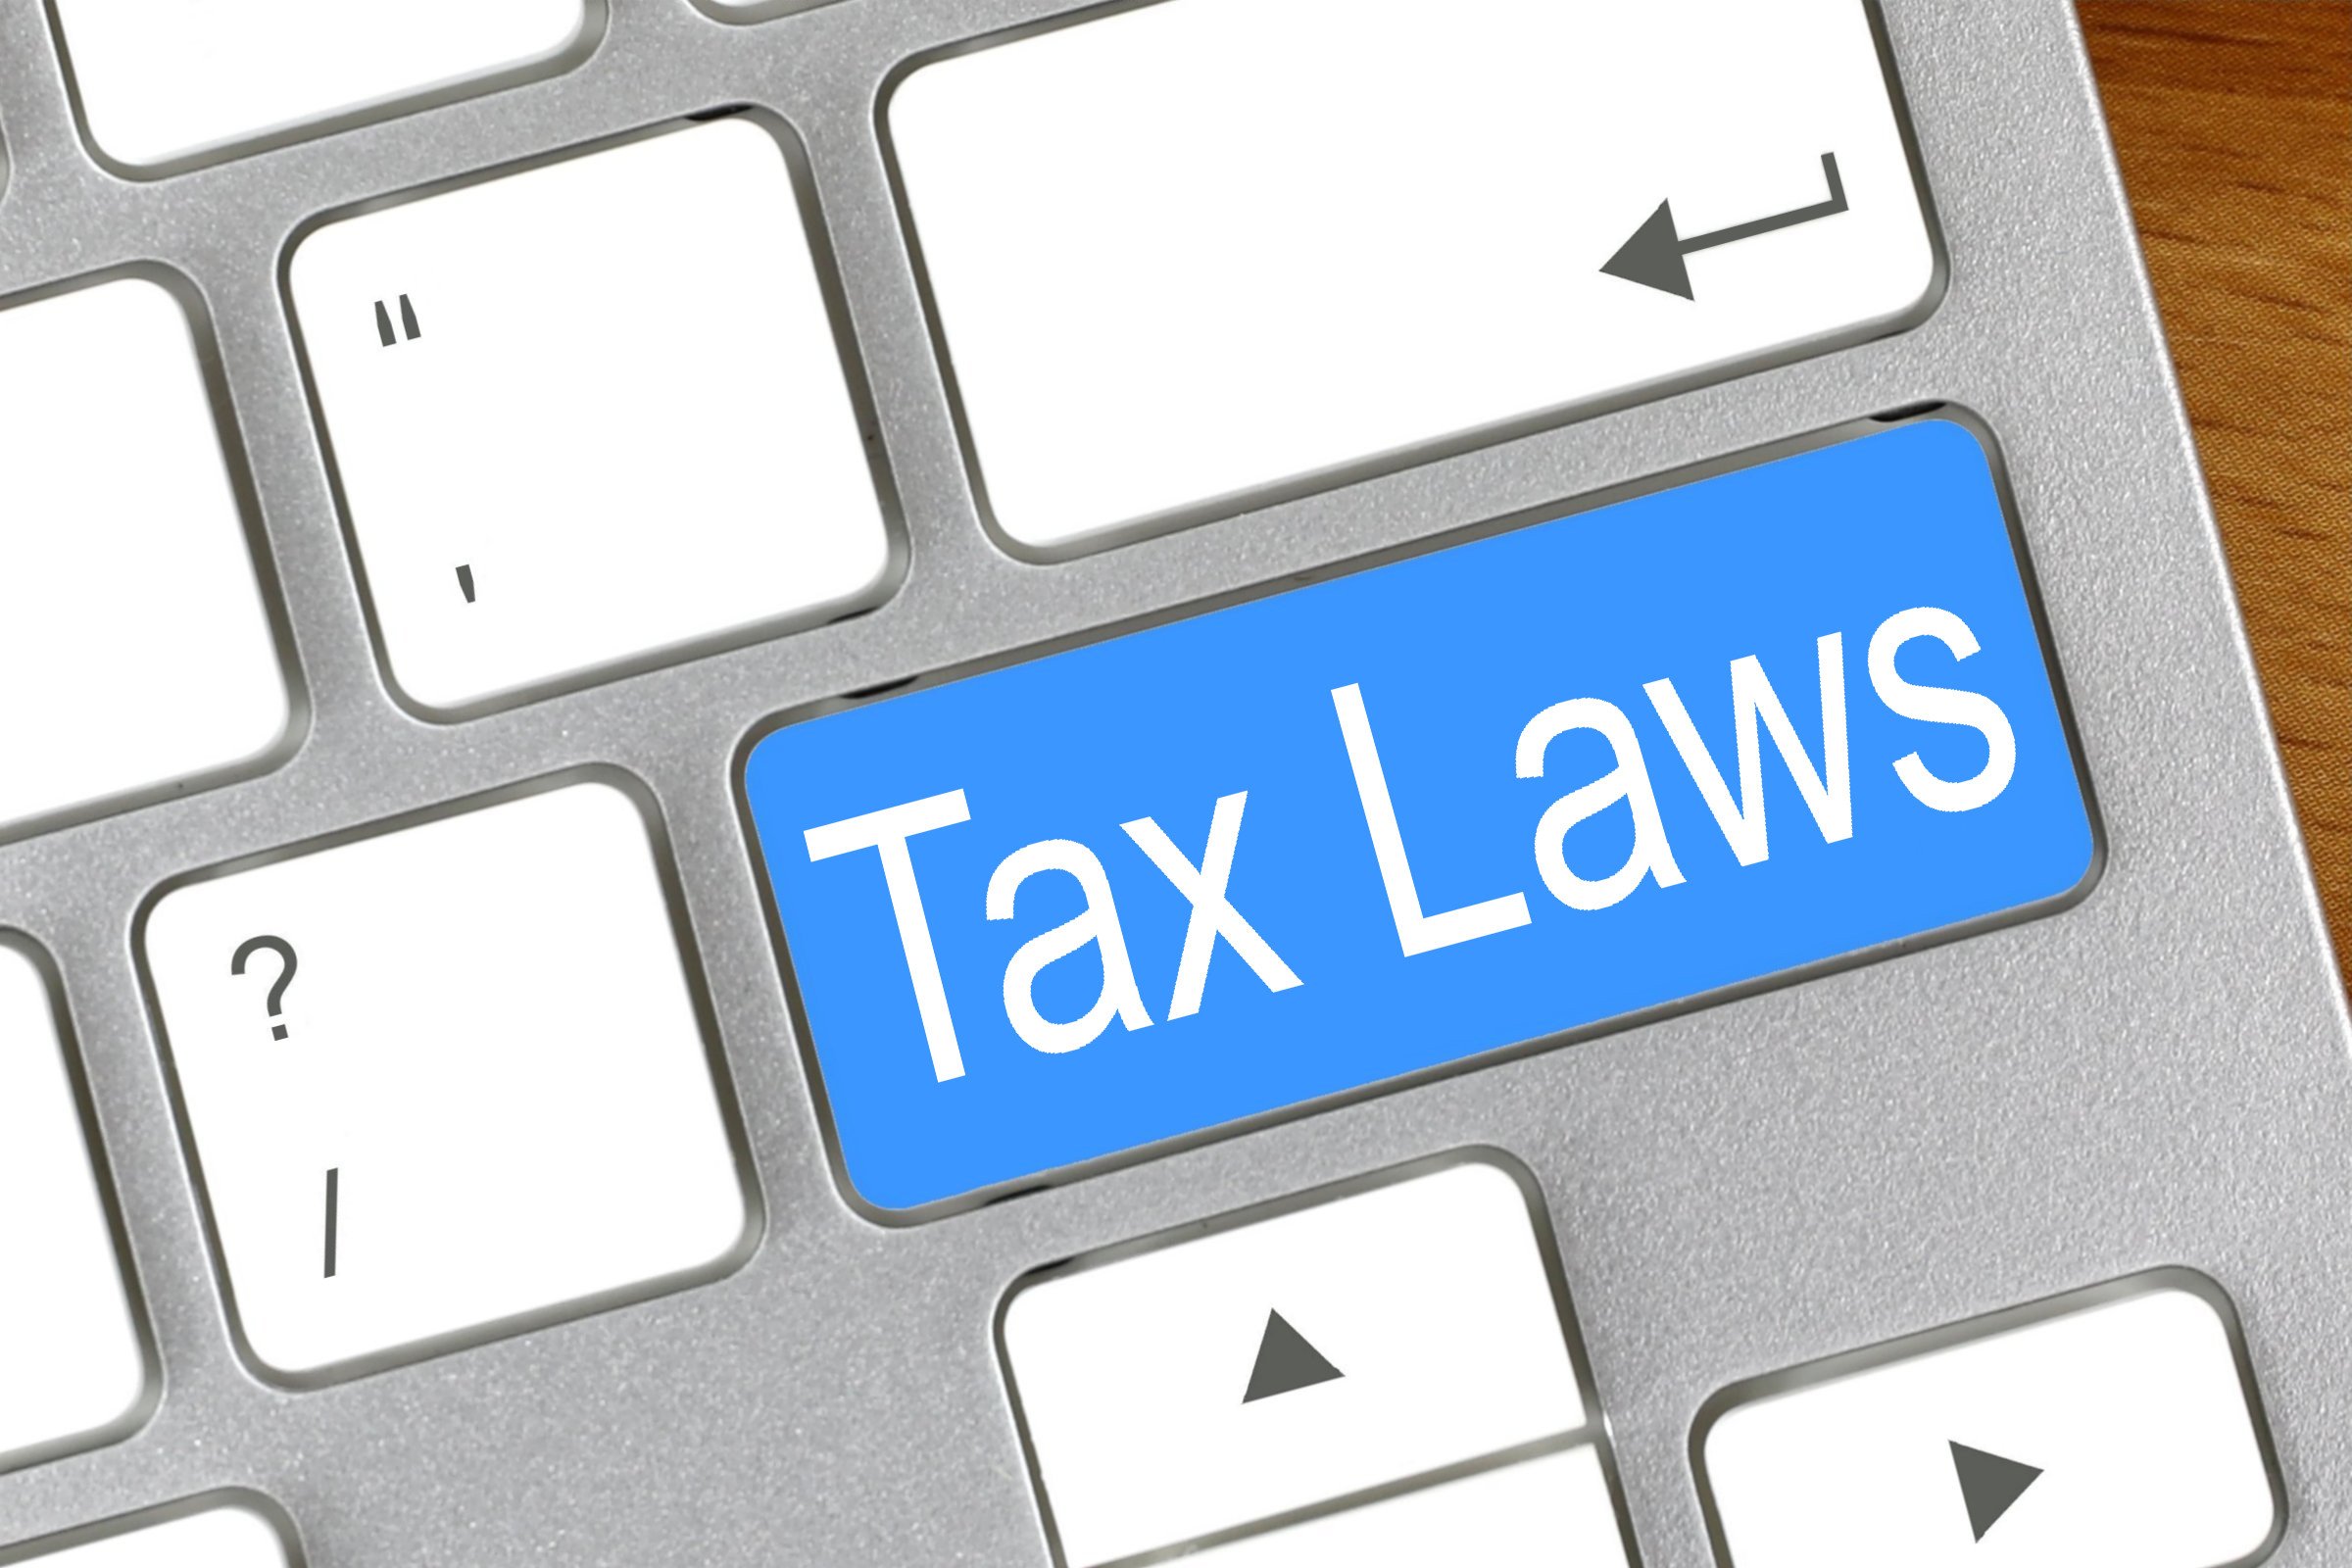 tax laws